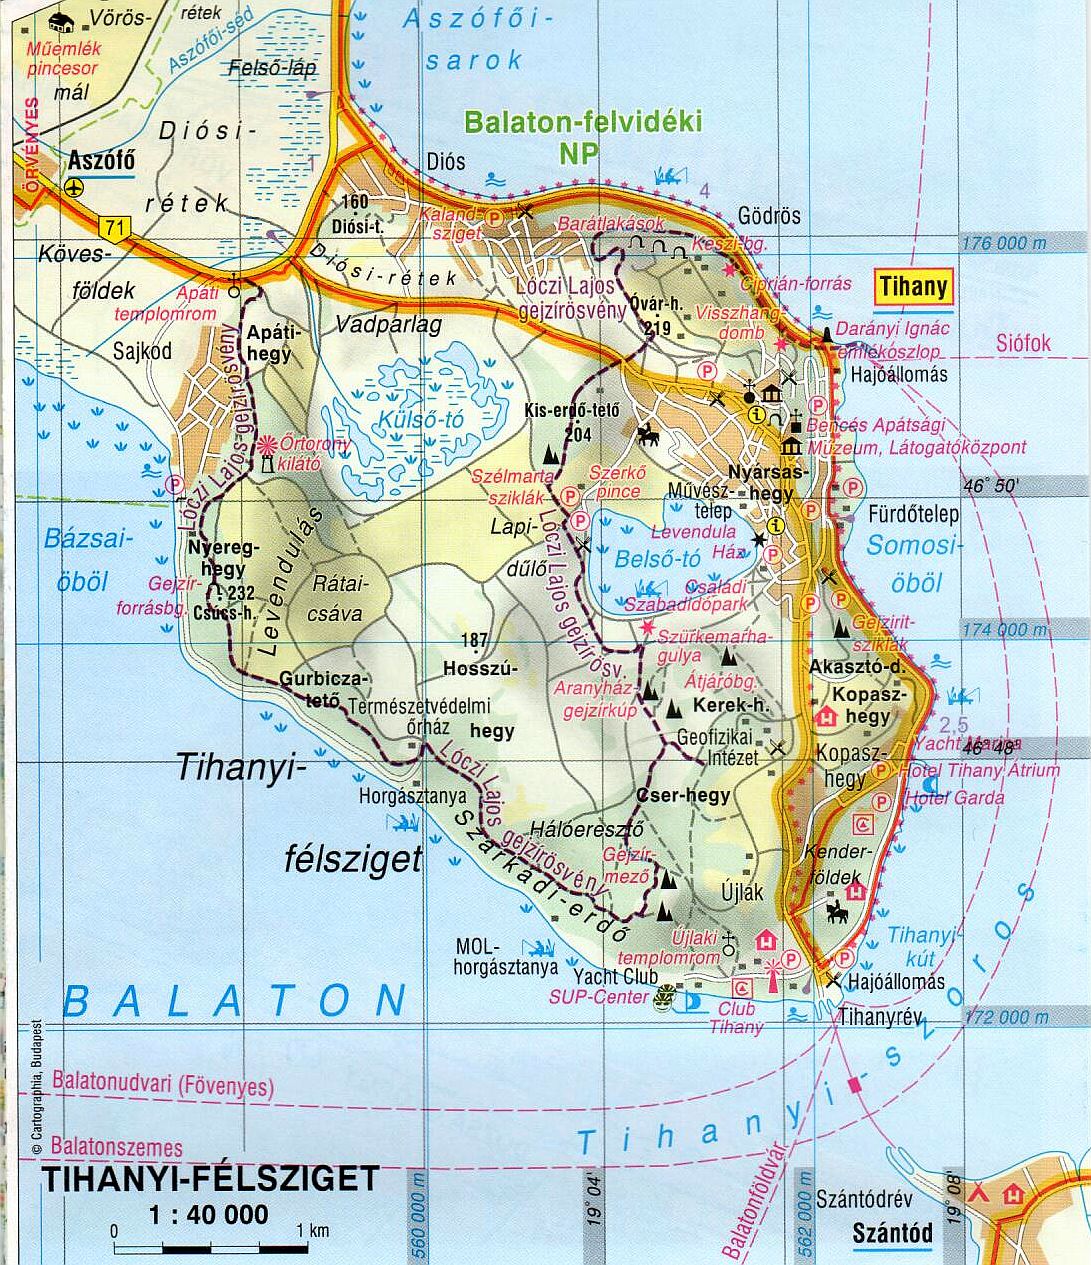 Balaton leisure time map: sample 1:40.000